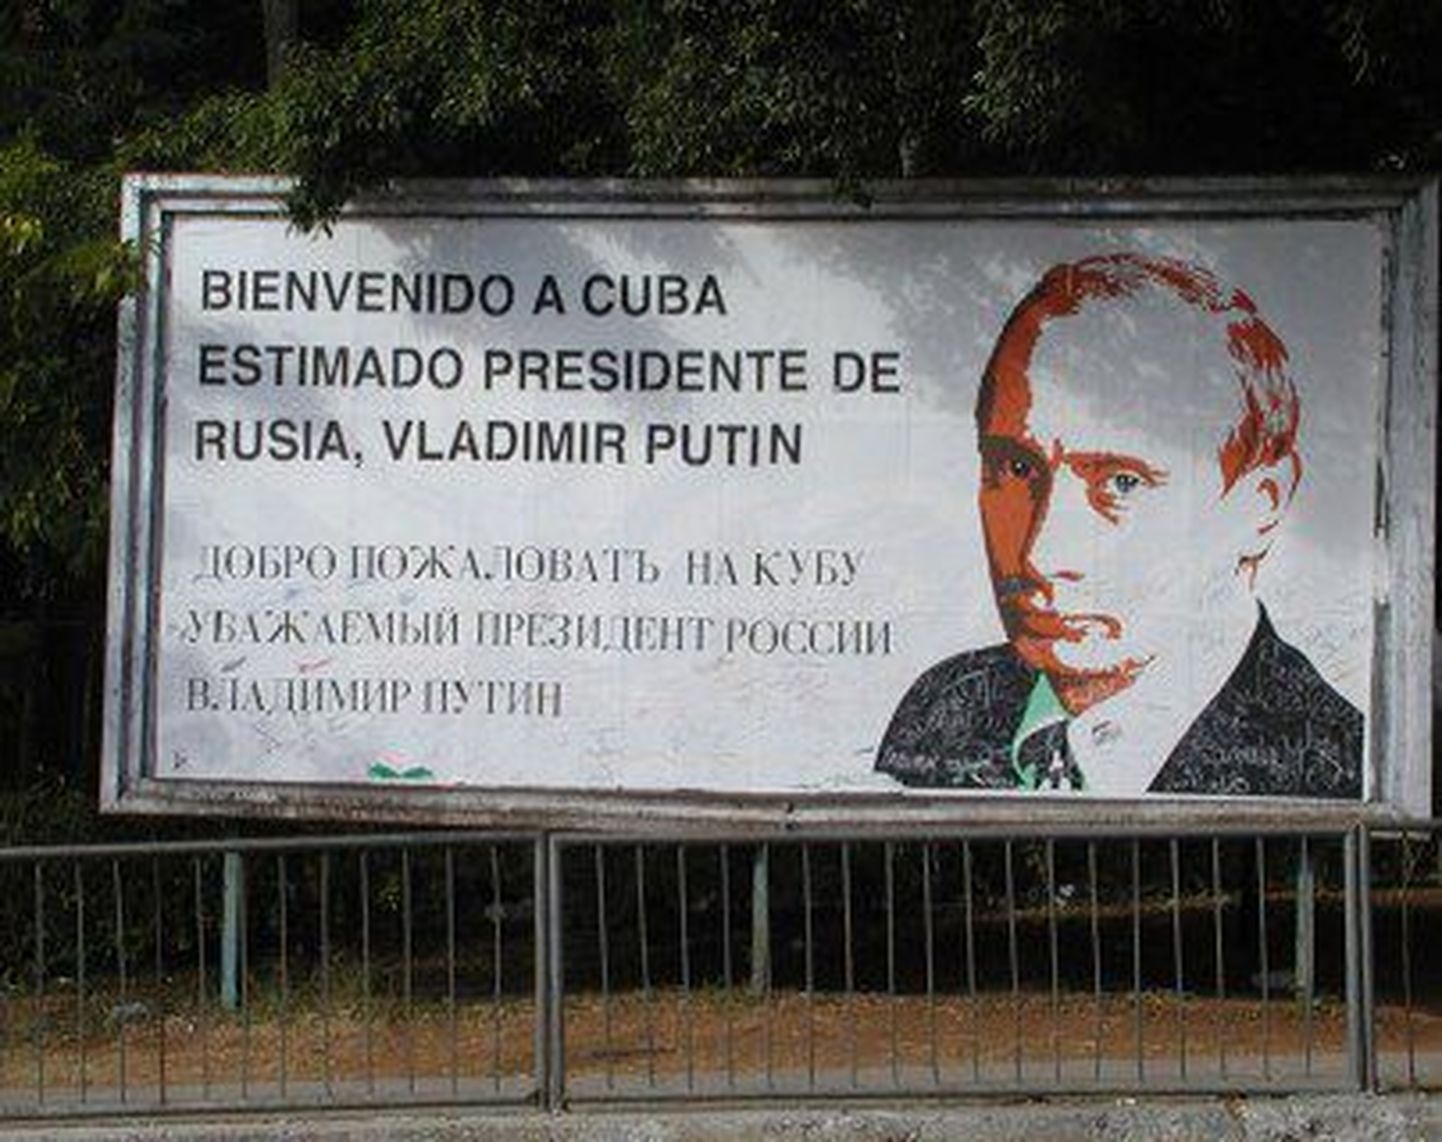 Plakat, mis tervitas Kuubasse saabunud endist Venemaa presidenti Vladimir Putinit.